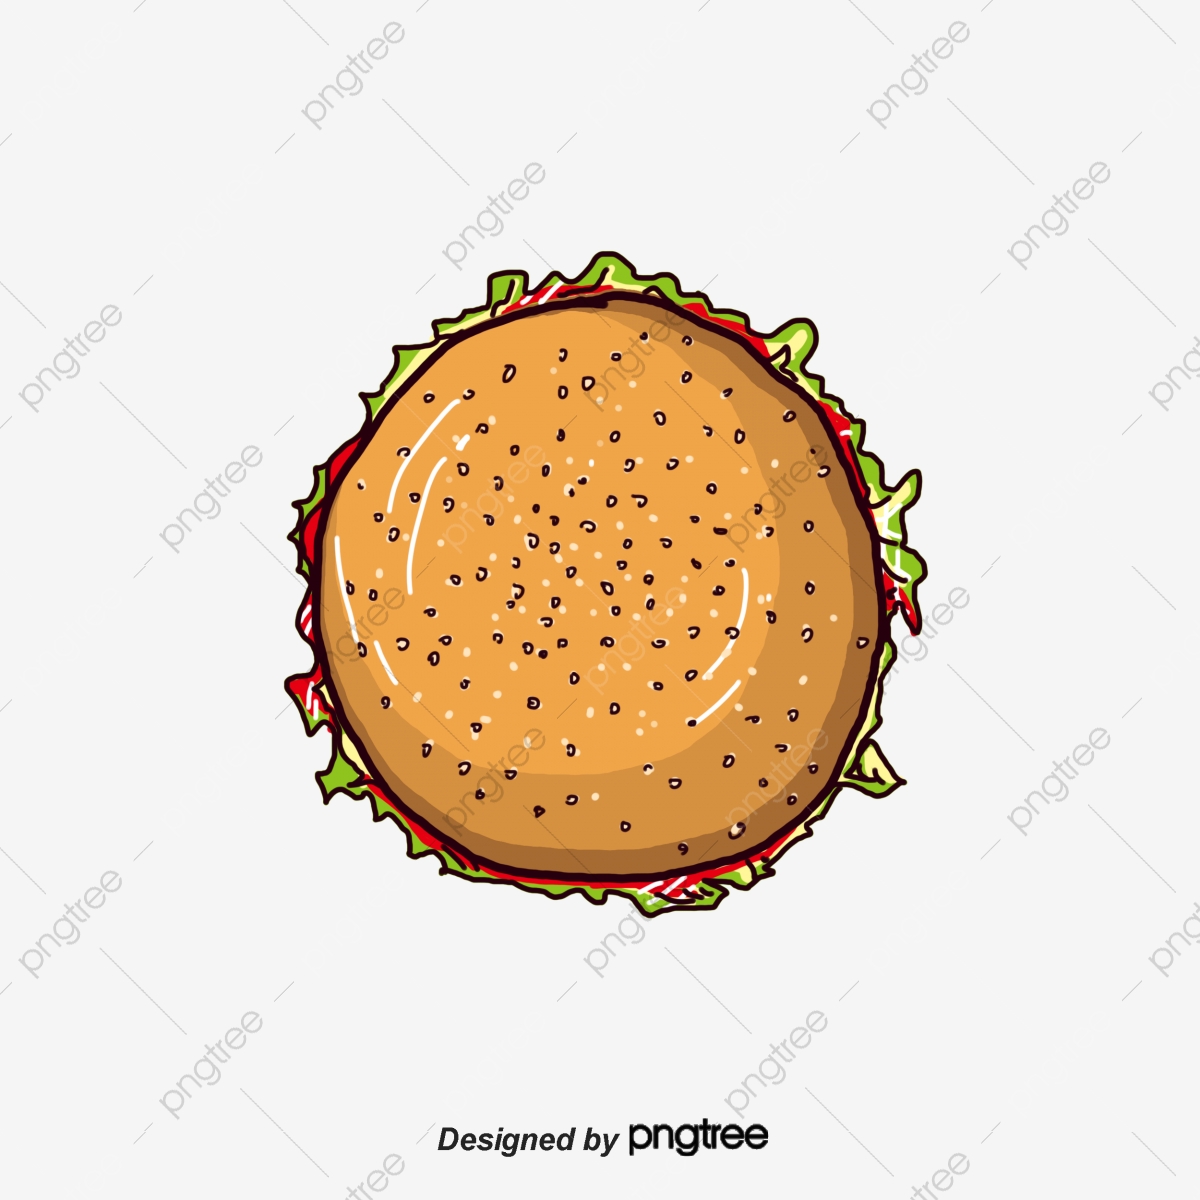 Food hamburger png transparent. Burger clipart top view